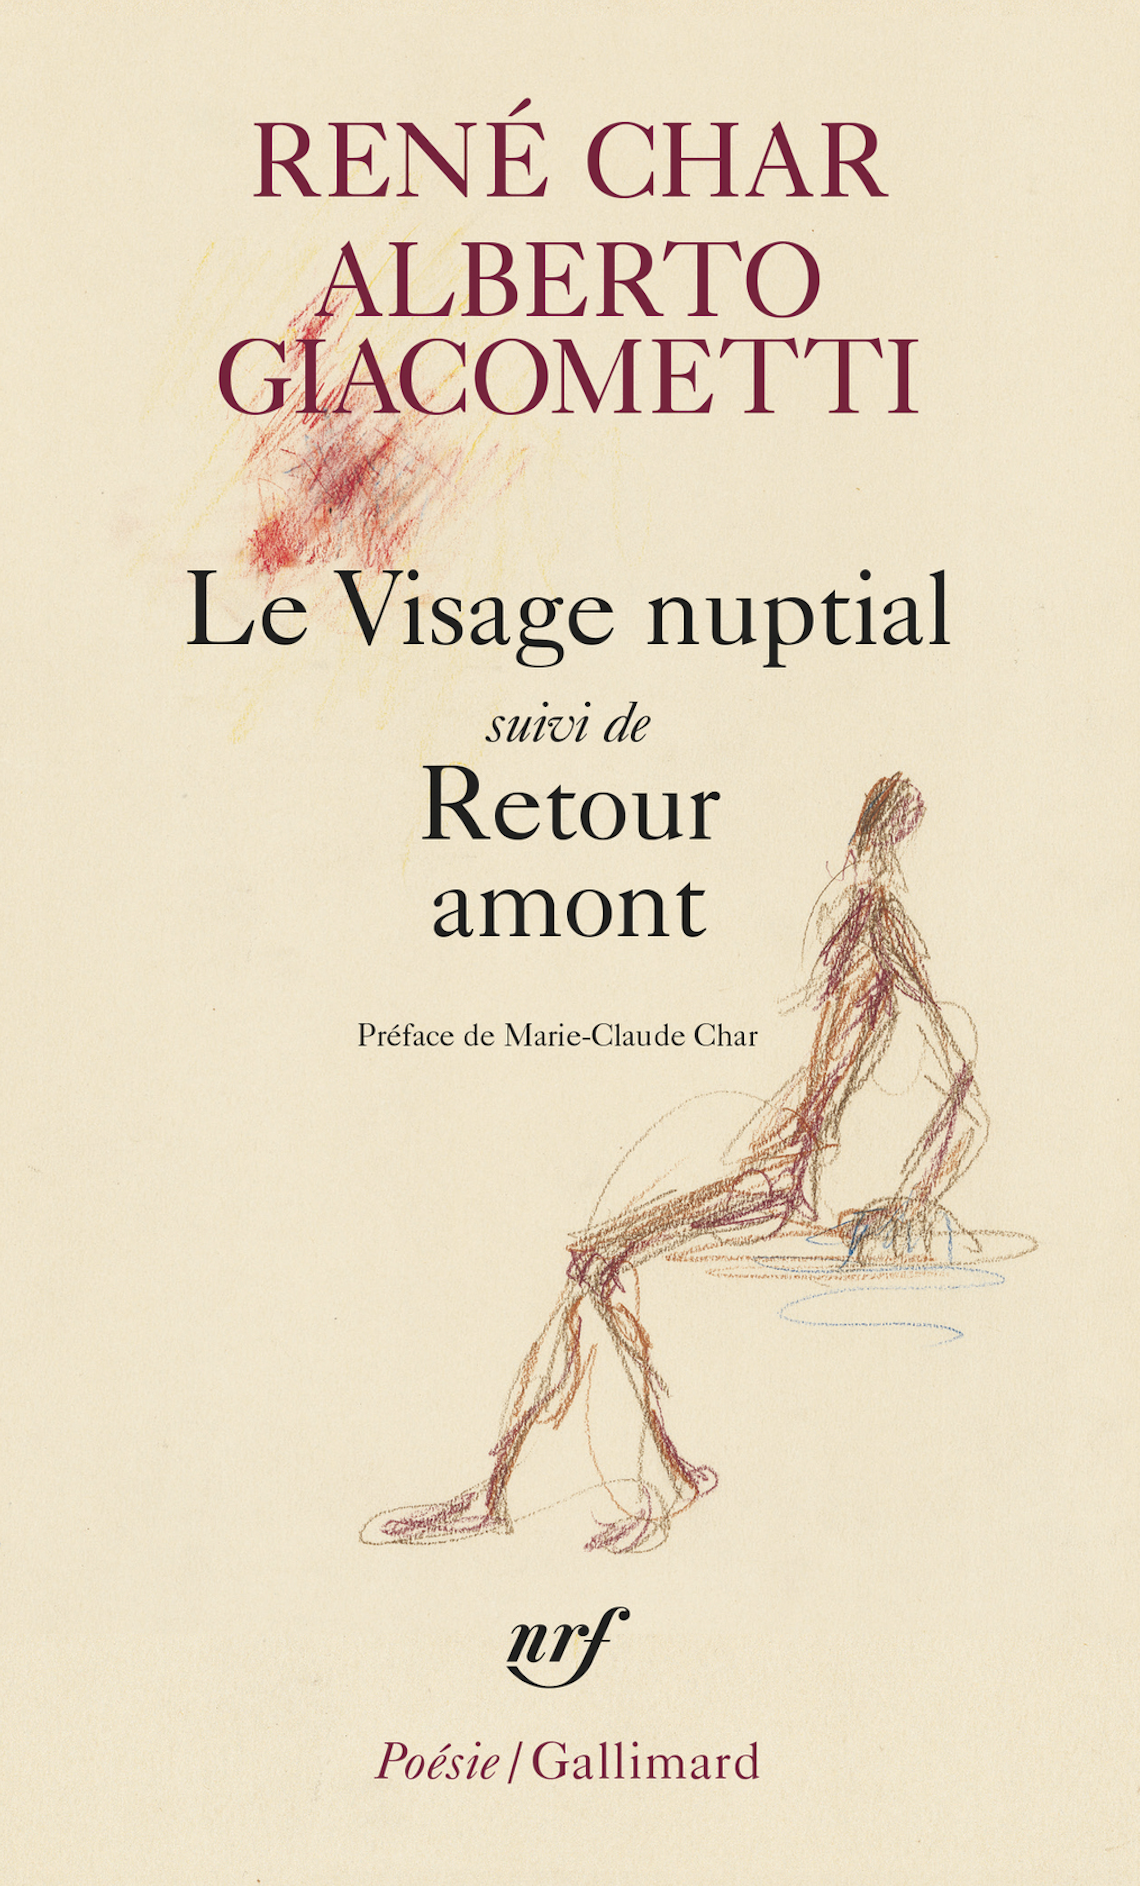 Fondation Giacometti -  René Char et Alberto Giacometti, "Une conversation souveraine"